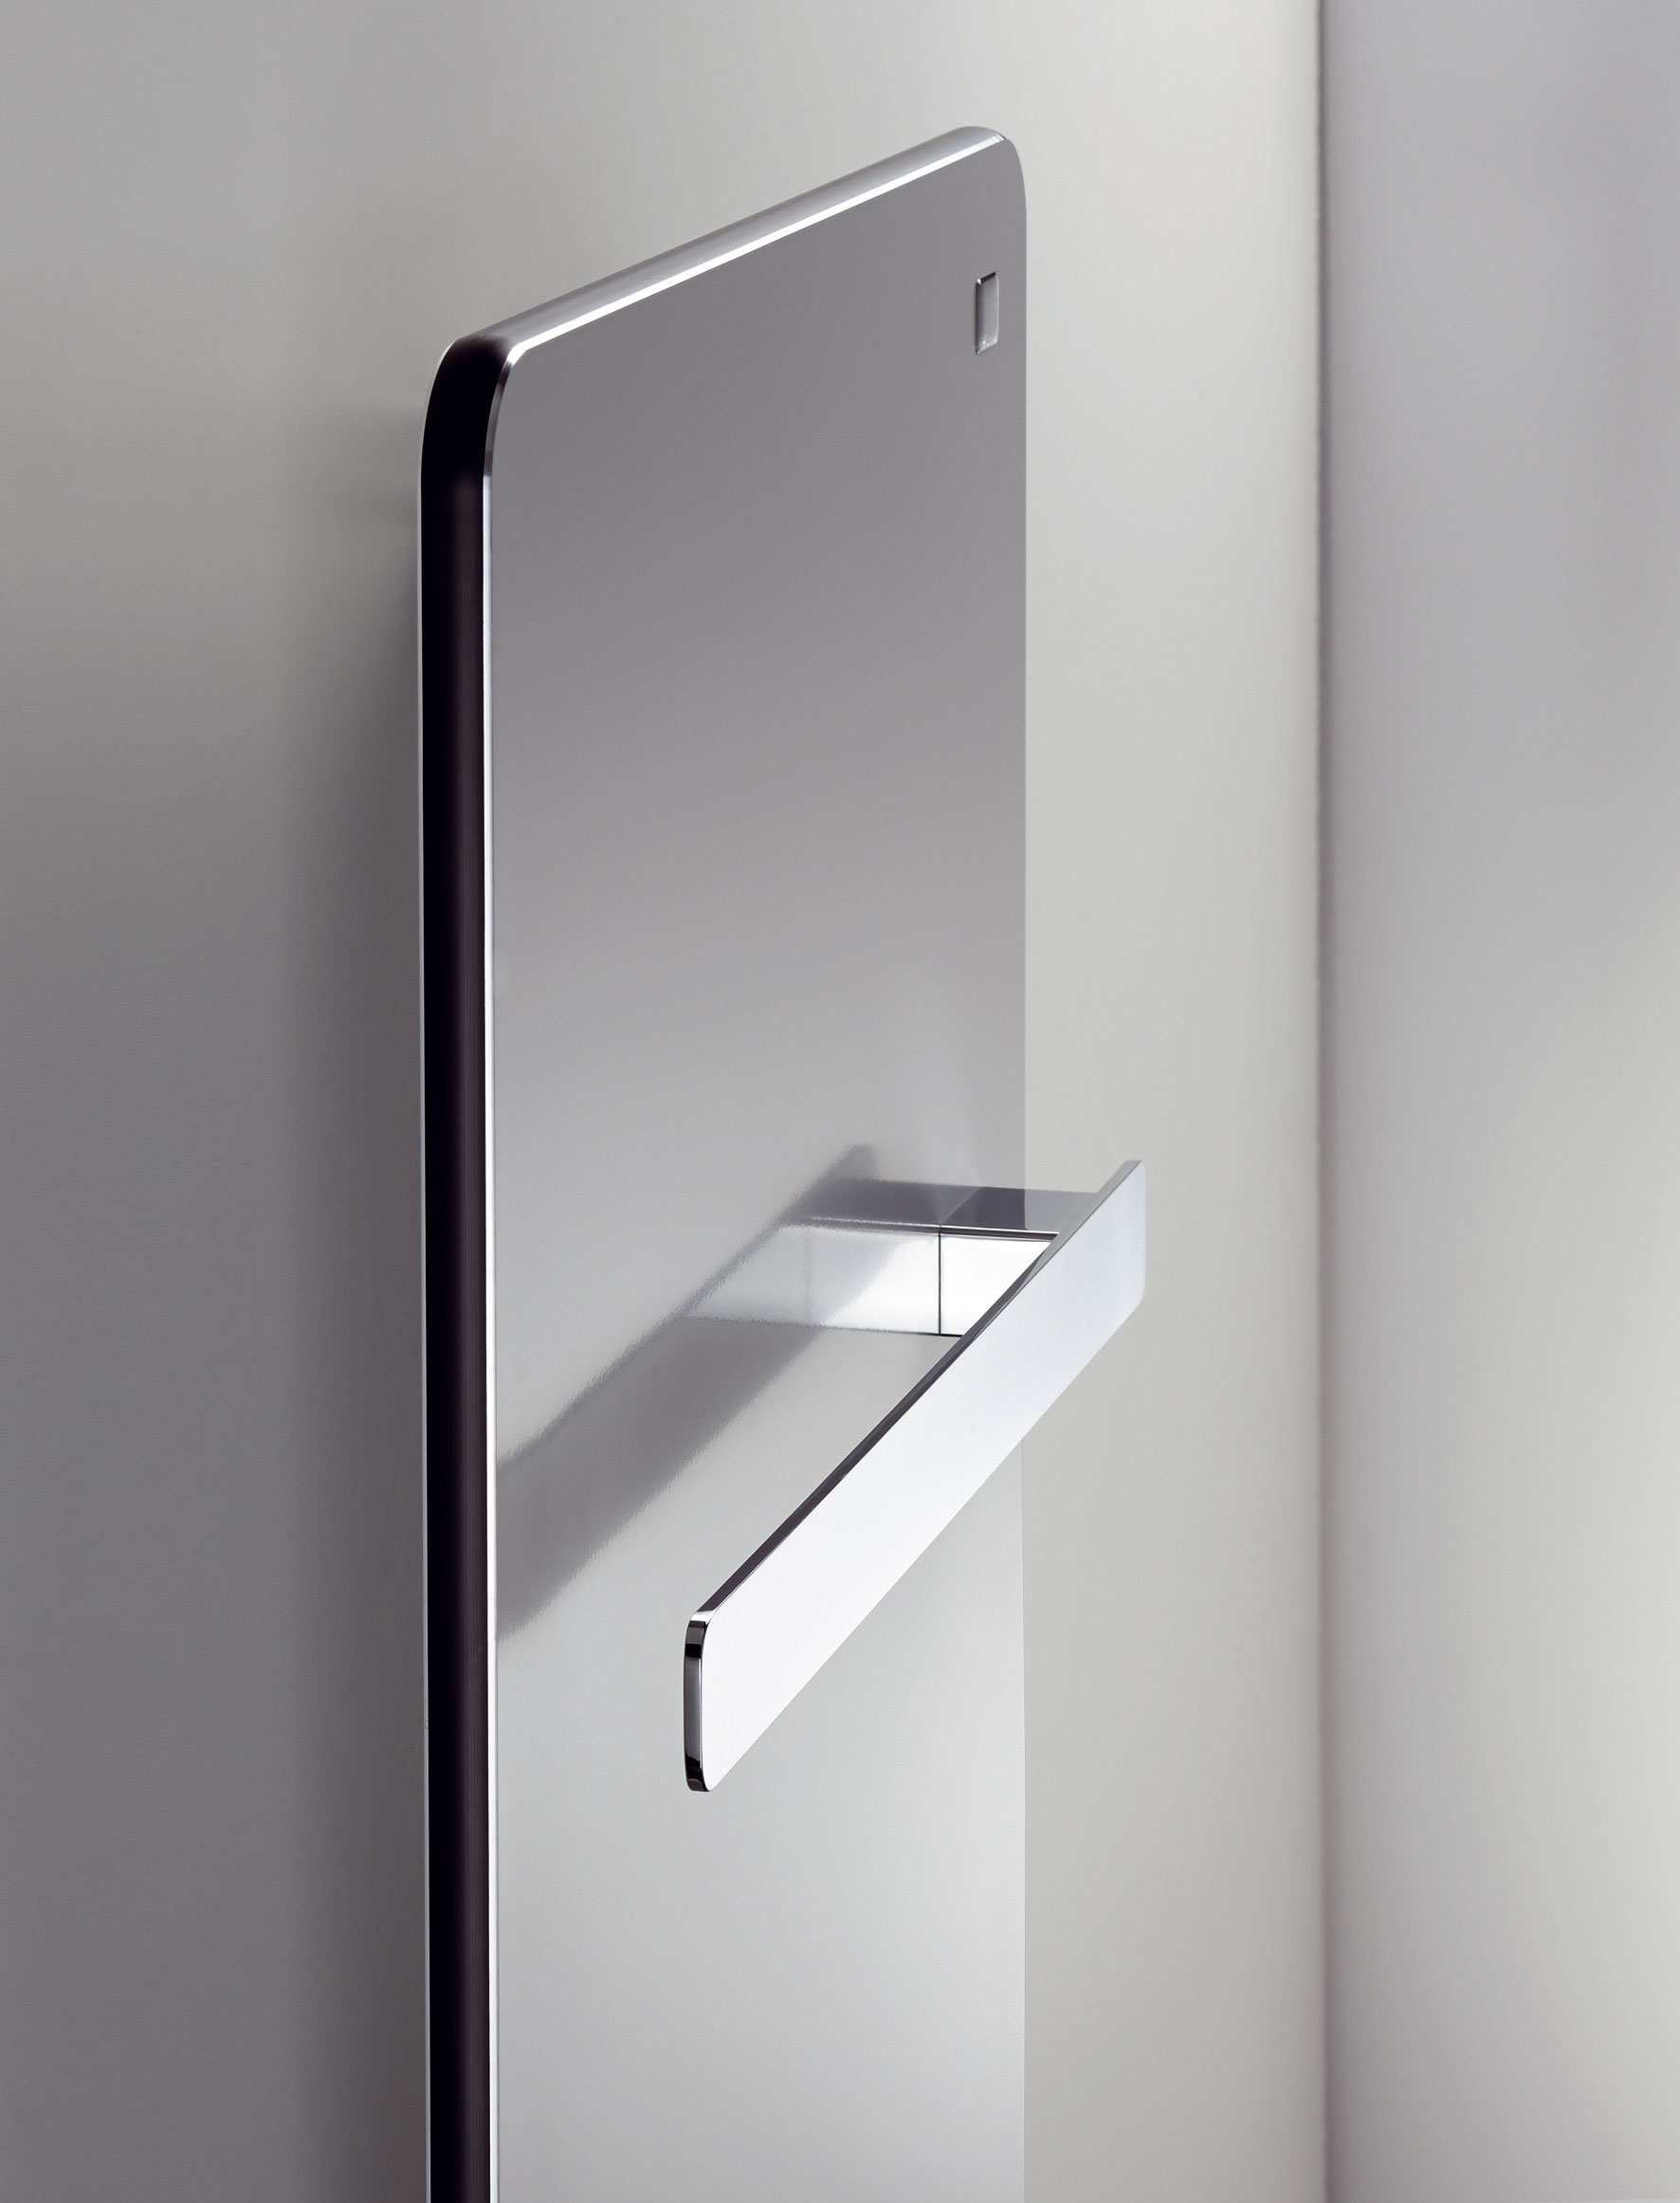 Moderný vzhľad nového dizajnového radiátora Vitalo ‚bar‘ dopĺňajú jeden alebo dva chrómované držiaky umožňujúce ľahké zavesenie uterákov.